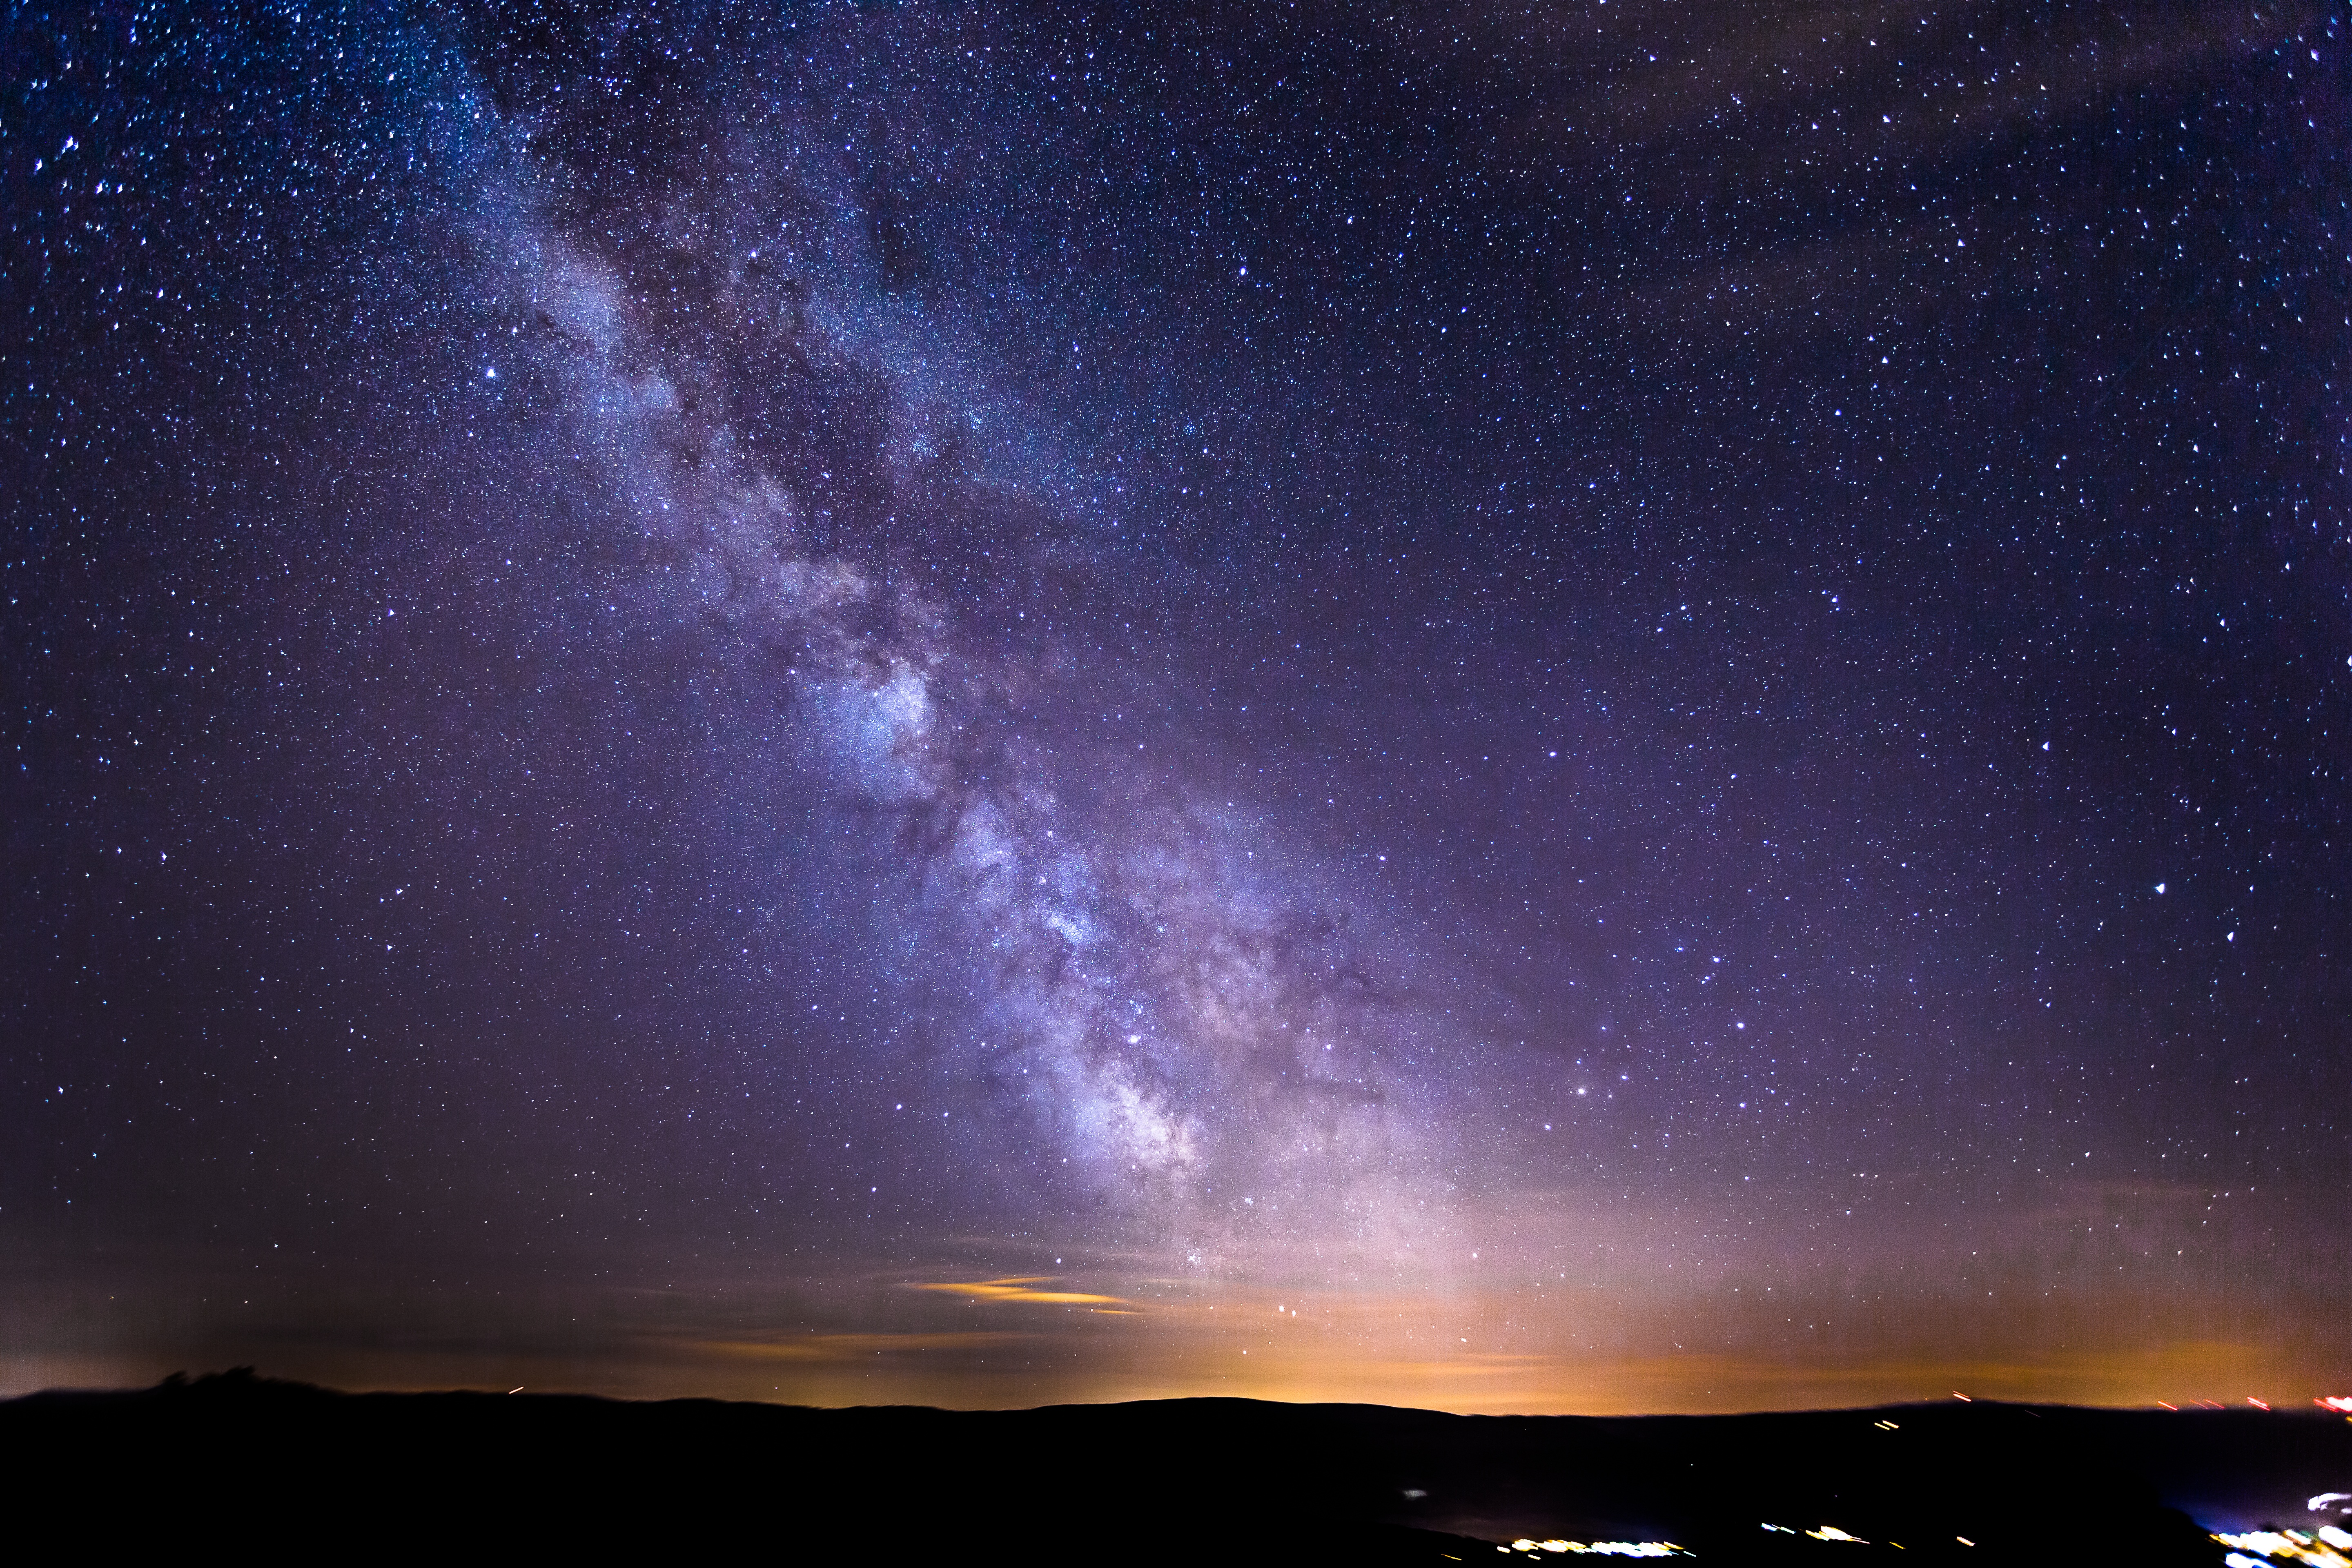 Обои ночное небо космическое пространство вечернее небо - бесплатные картинки на Fonwall